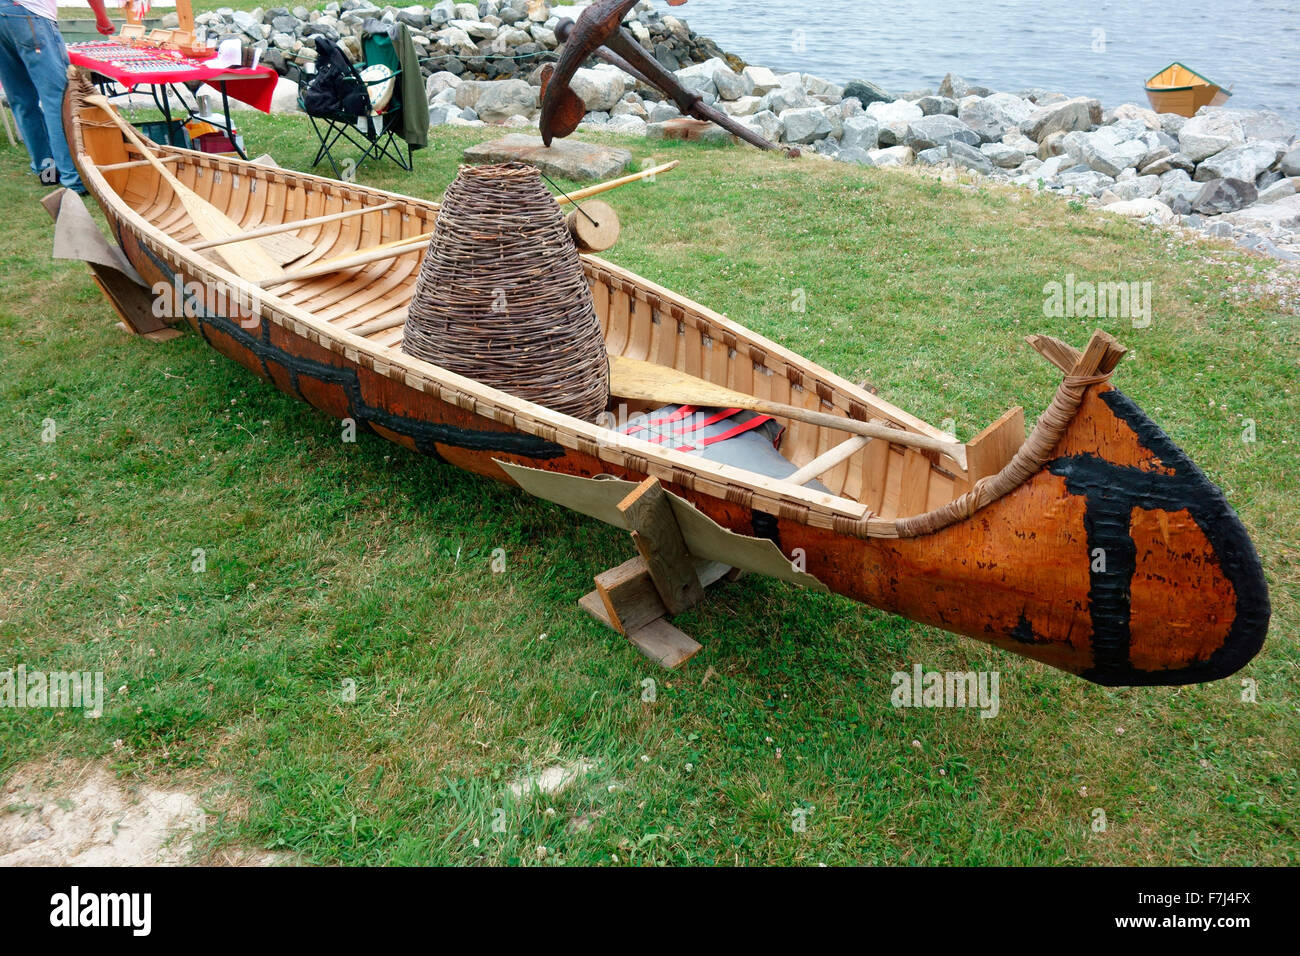 Birke Barke Kanu von MicMac, Migmaw MiKmaq Indianer Eingeborenen Aborigines in Nordamerika gemacht Stockfoto